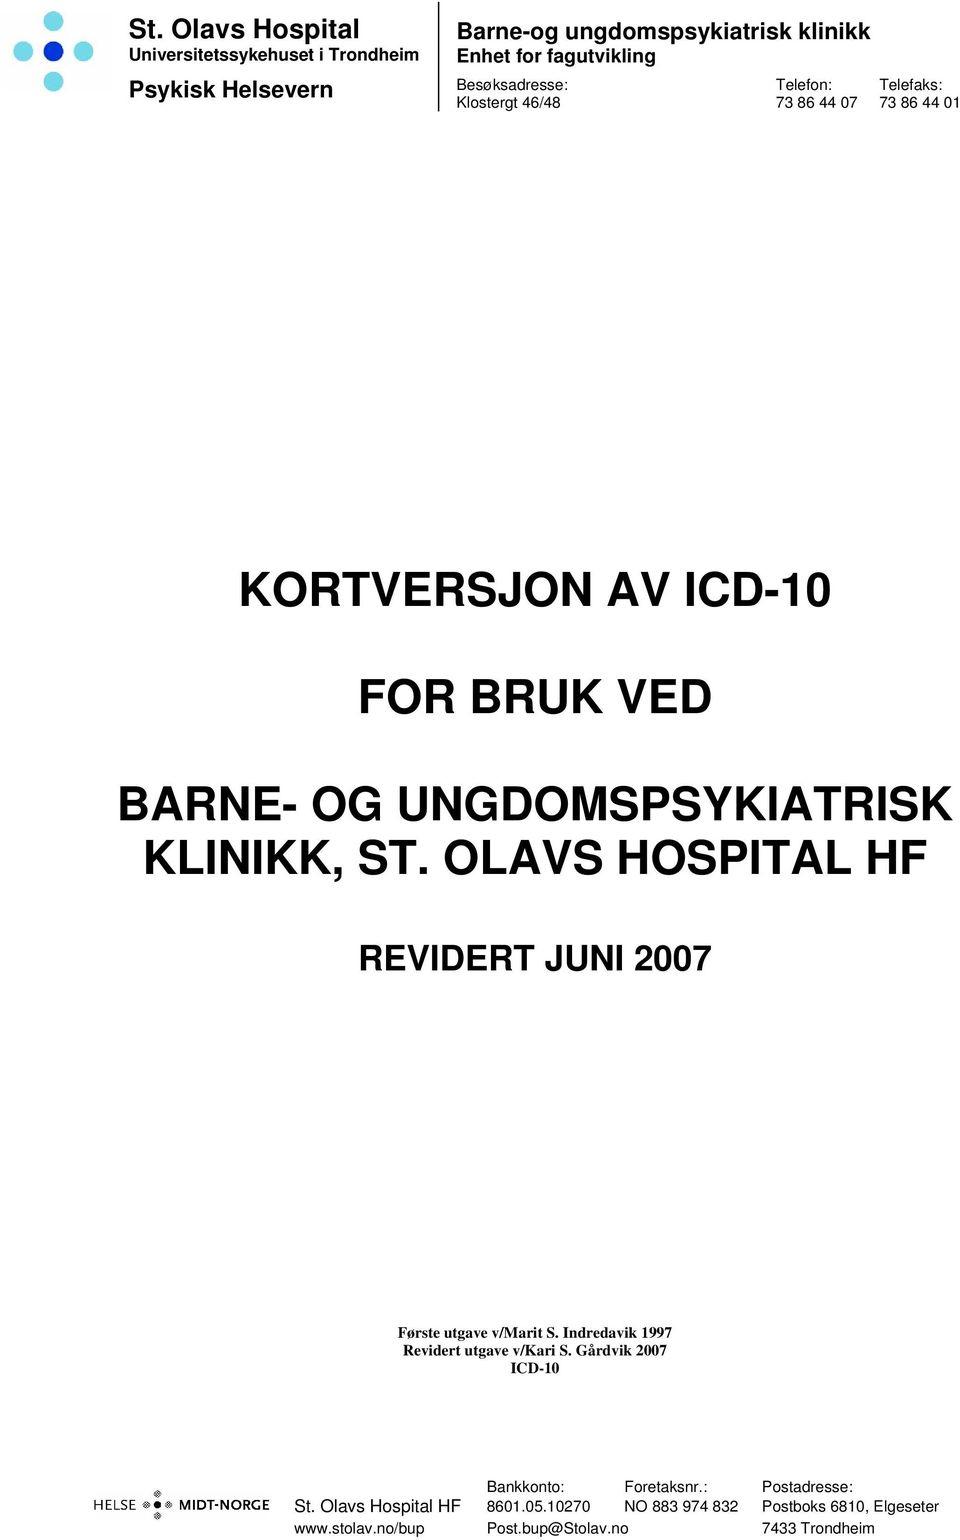 BARNE- OG UNGDOMSPSYKIATRISK KLINIKK, ST. OLAVS HOSPITAL HF REVIDERT JUNI 2007 Bankkonto: Foretaksnr.: Postadresse: St.